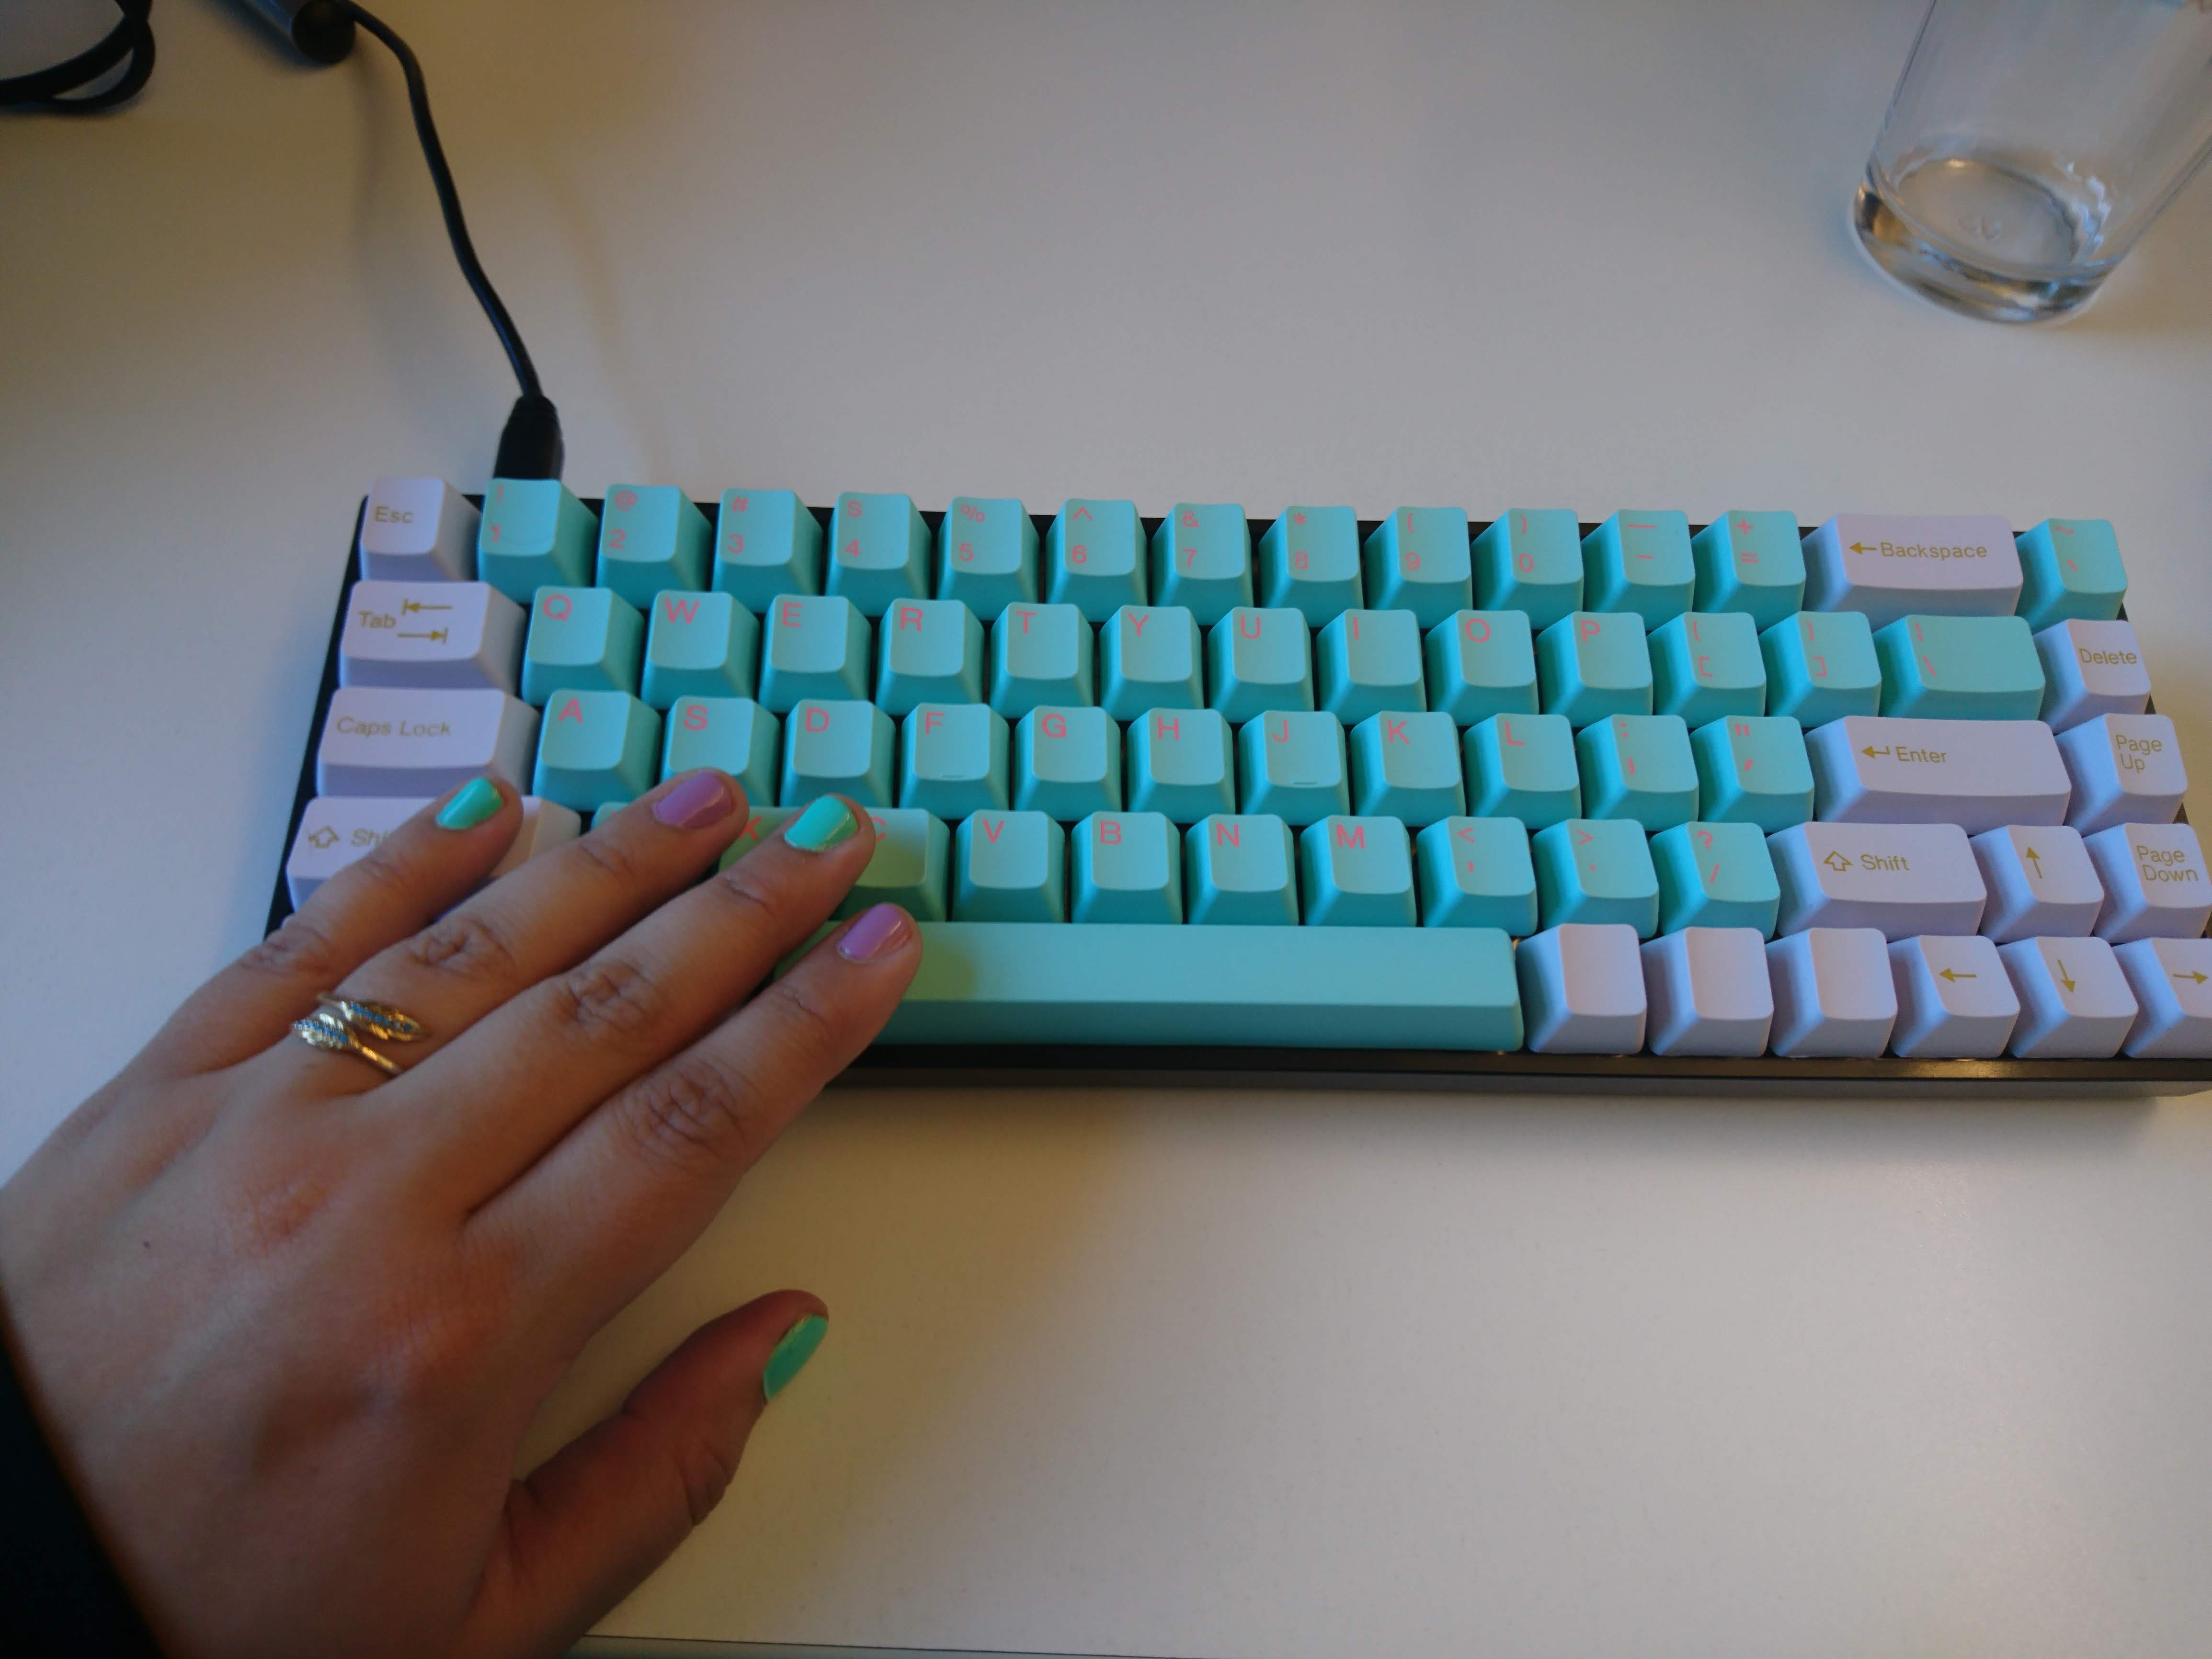 Clémentine Pirlot's keyboard